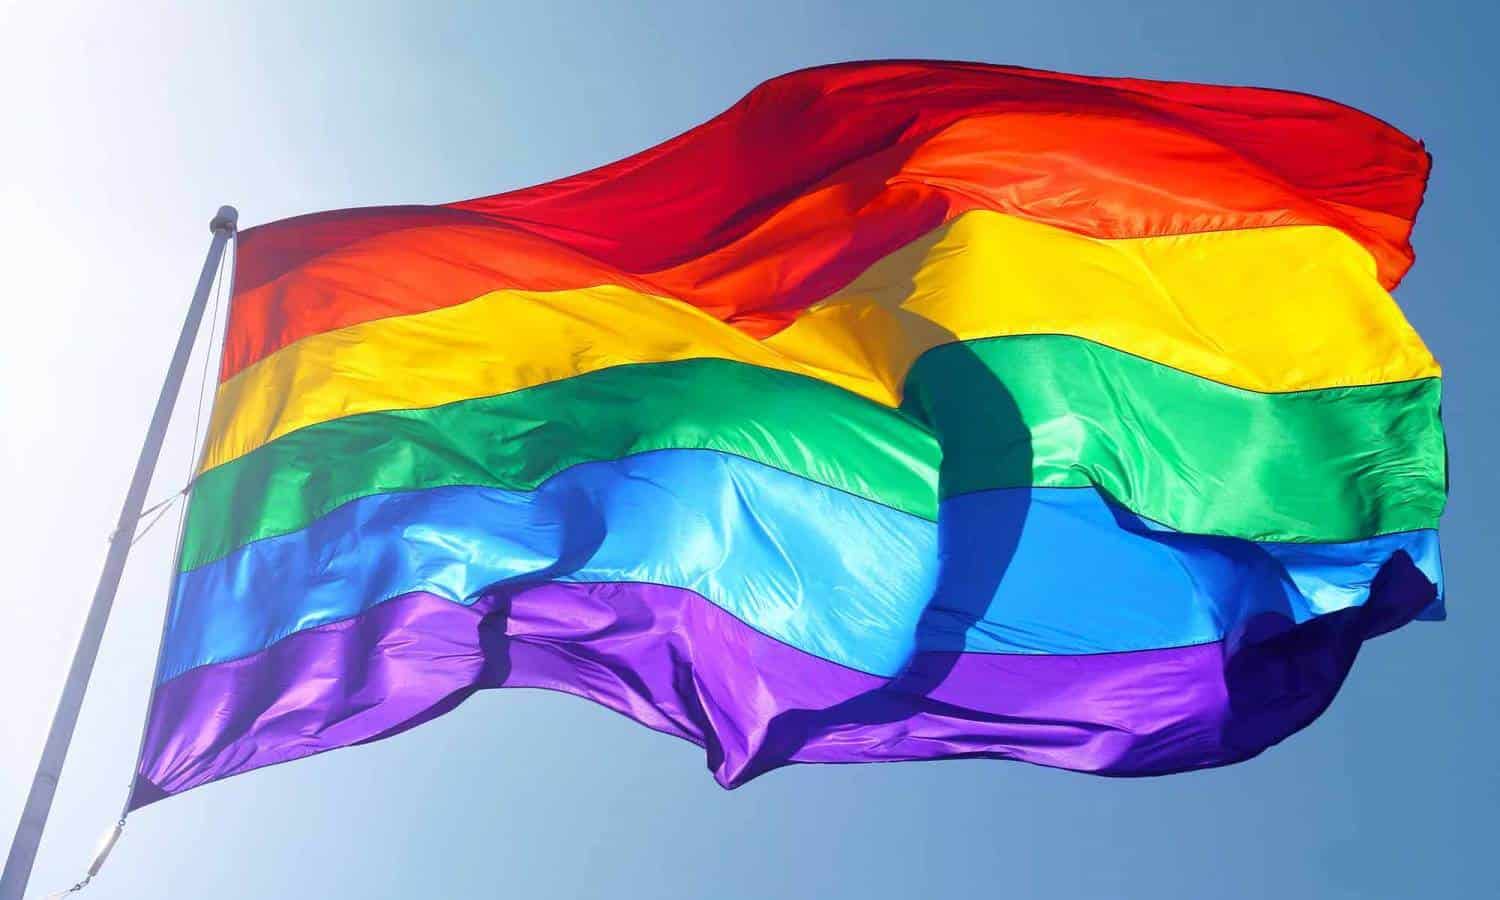 LGBTQ Rainbow Flag flying under blue skies.